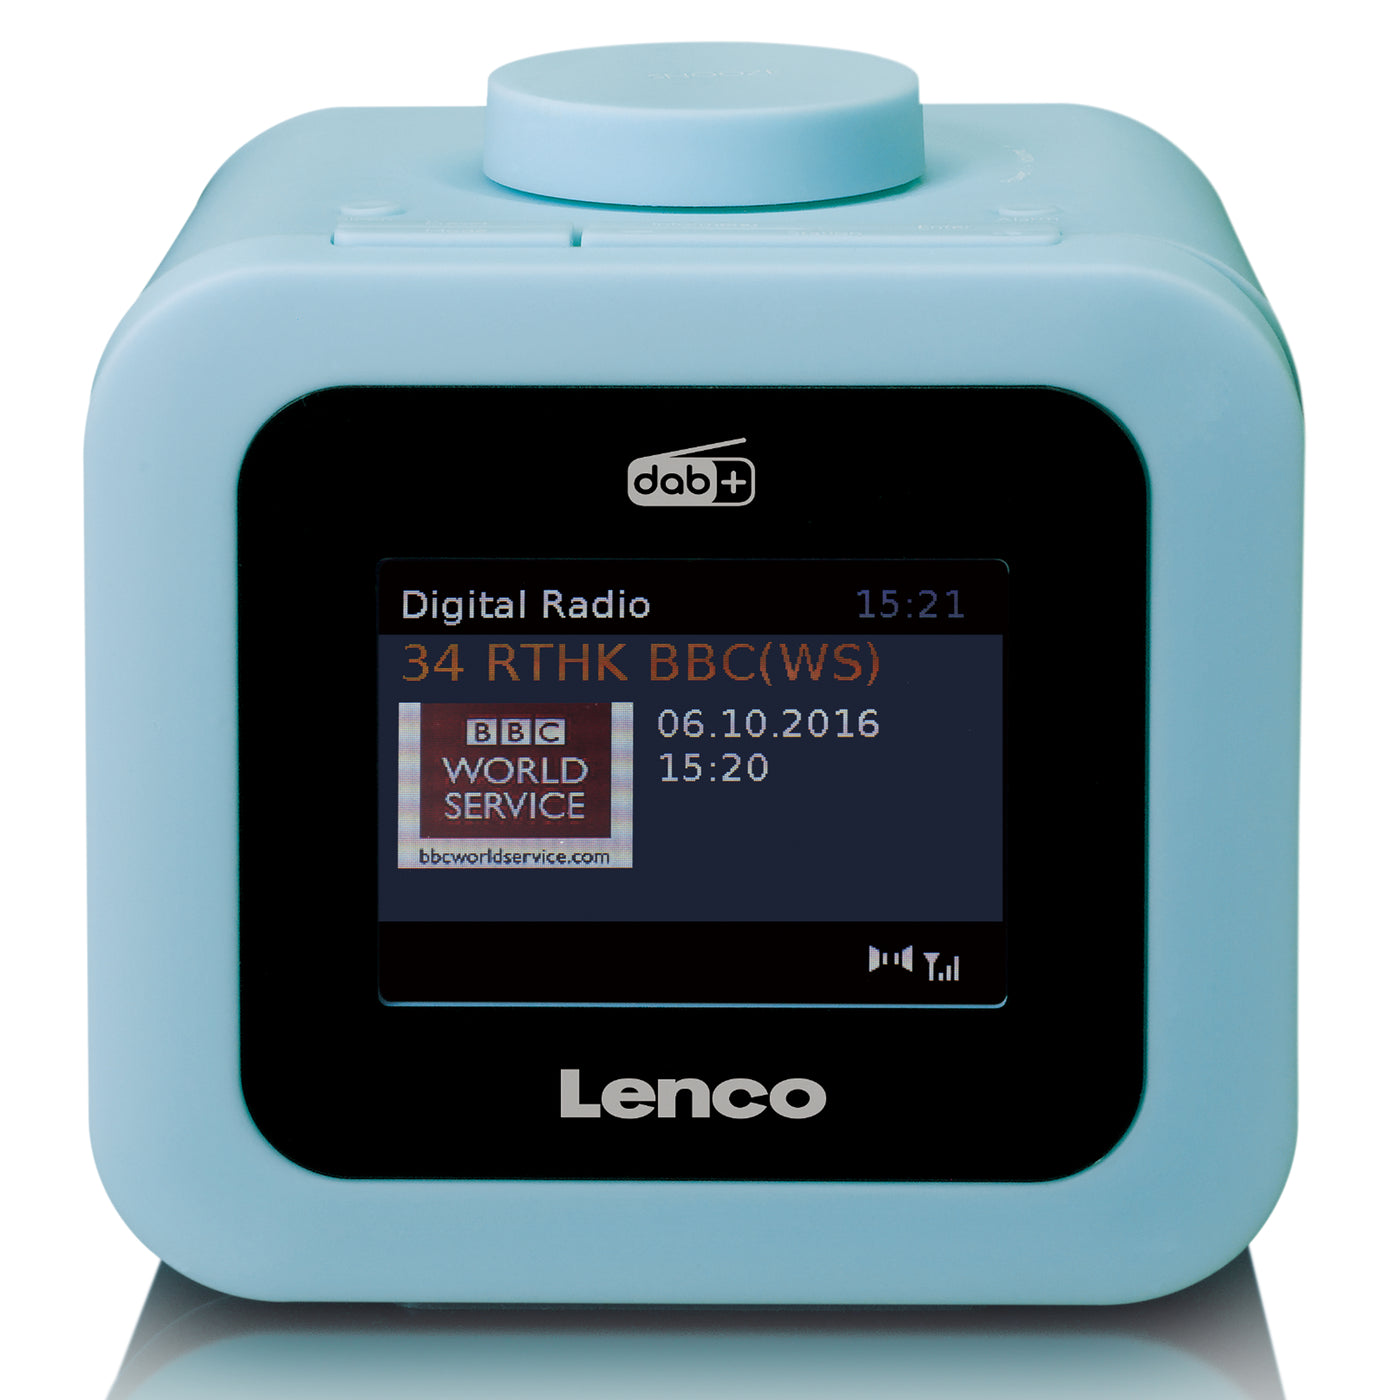 LENCO CR-620BU - Radiobudzik DAB+/FM z kolorowym wyświetlaczem - Niebieski